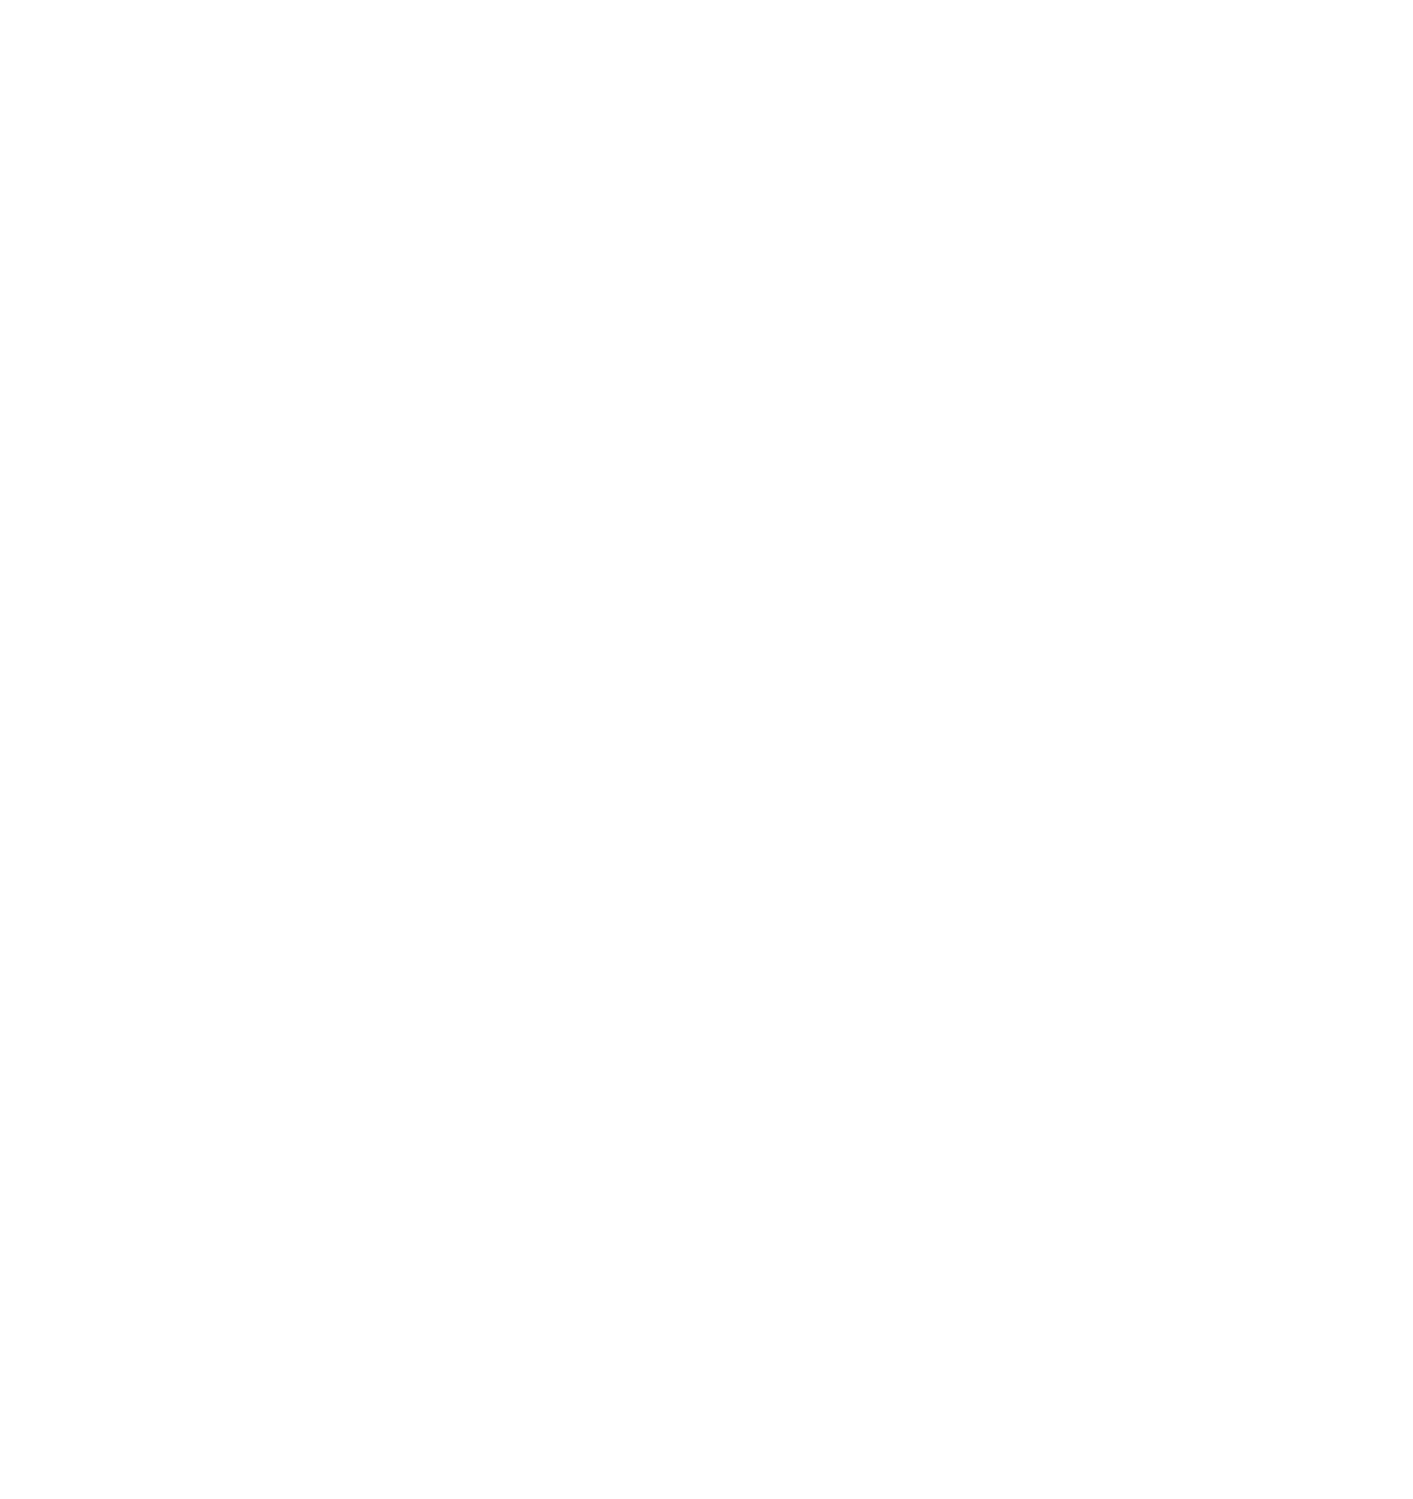 Saga Communications logo pour fonds sombres (PNG transparent)